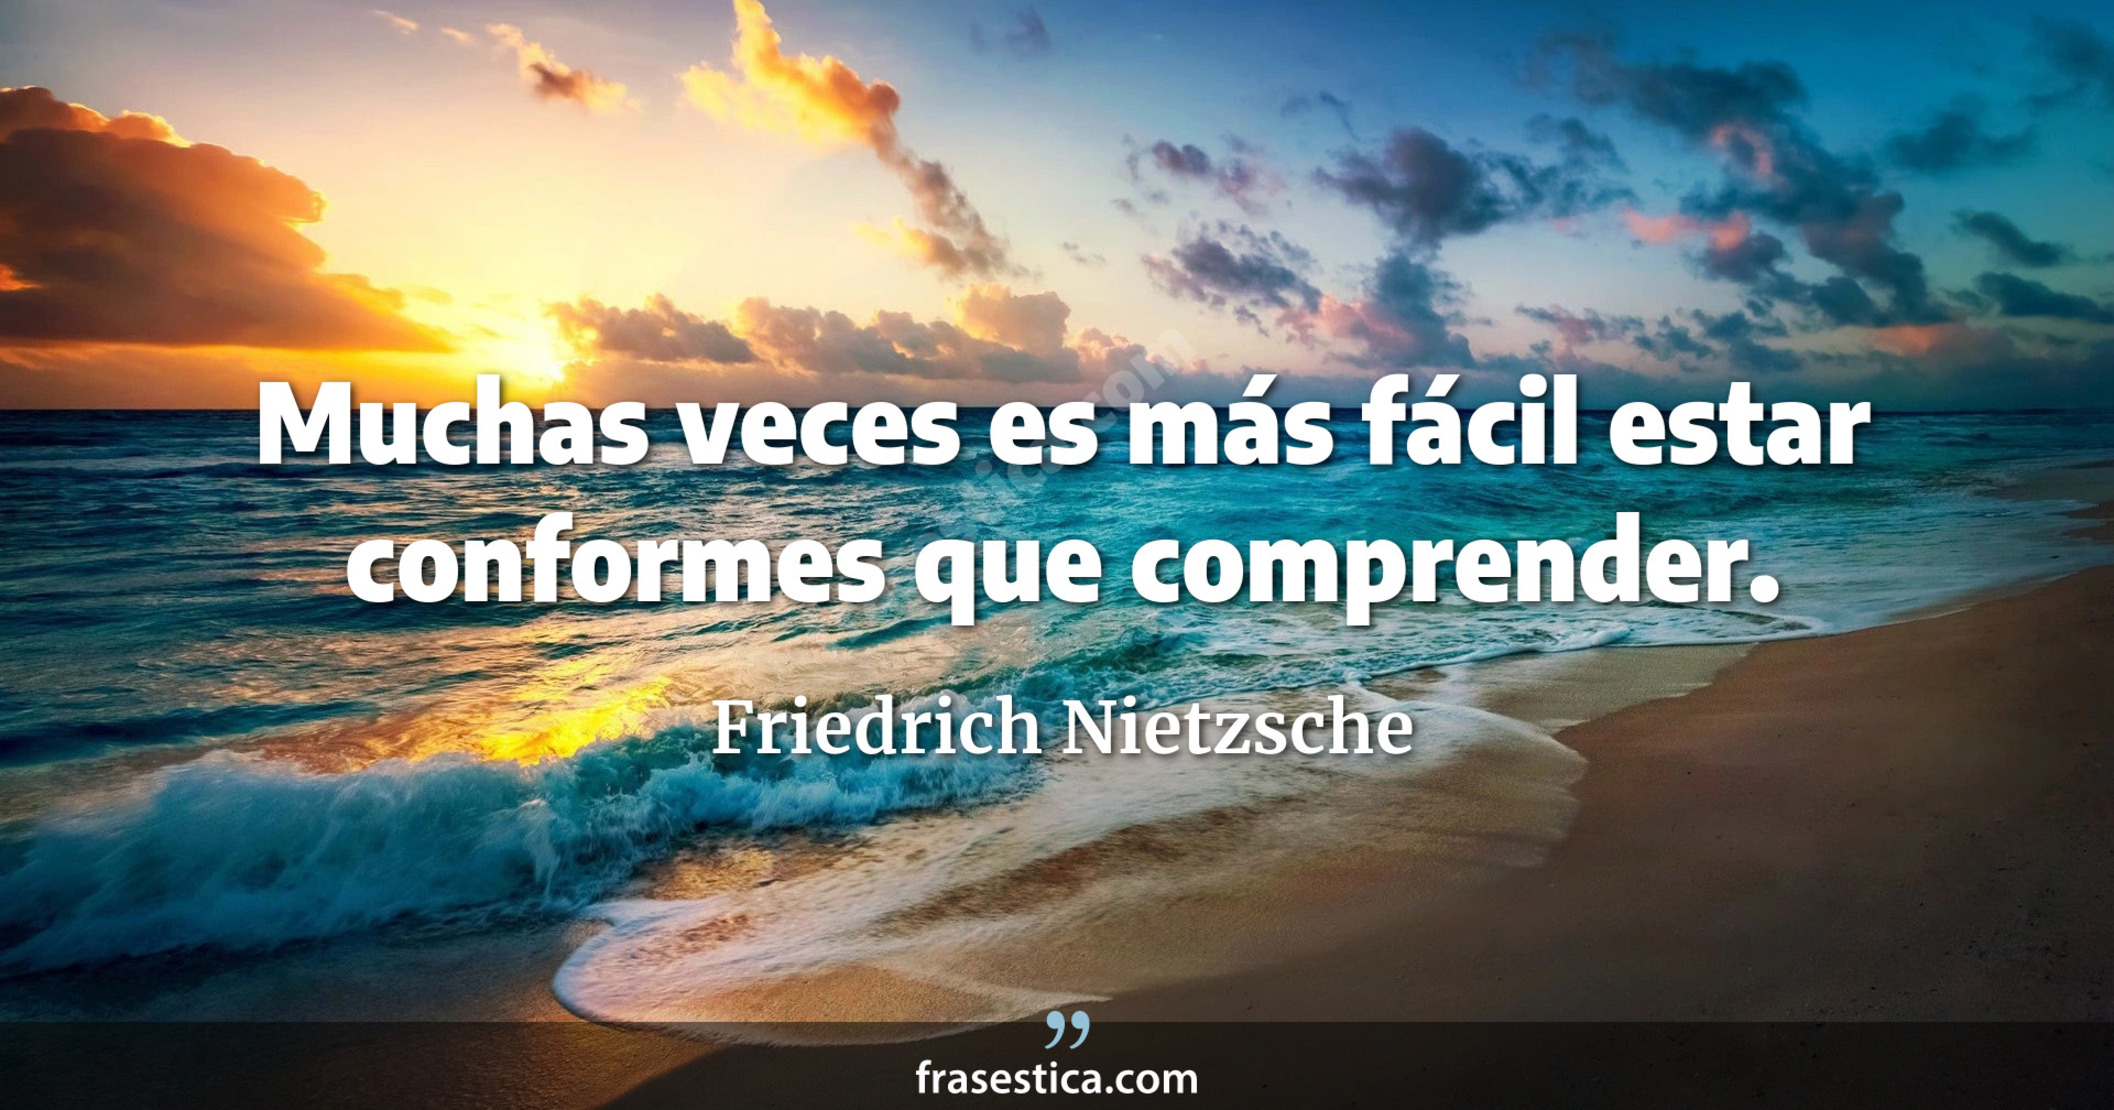 Muchas veces es más fácil estar conformes que comprender. - Friedrich Nietzsche